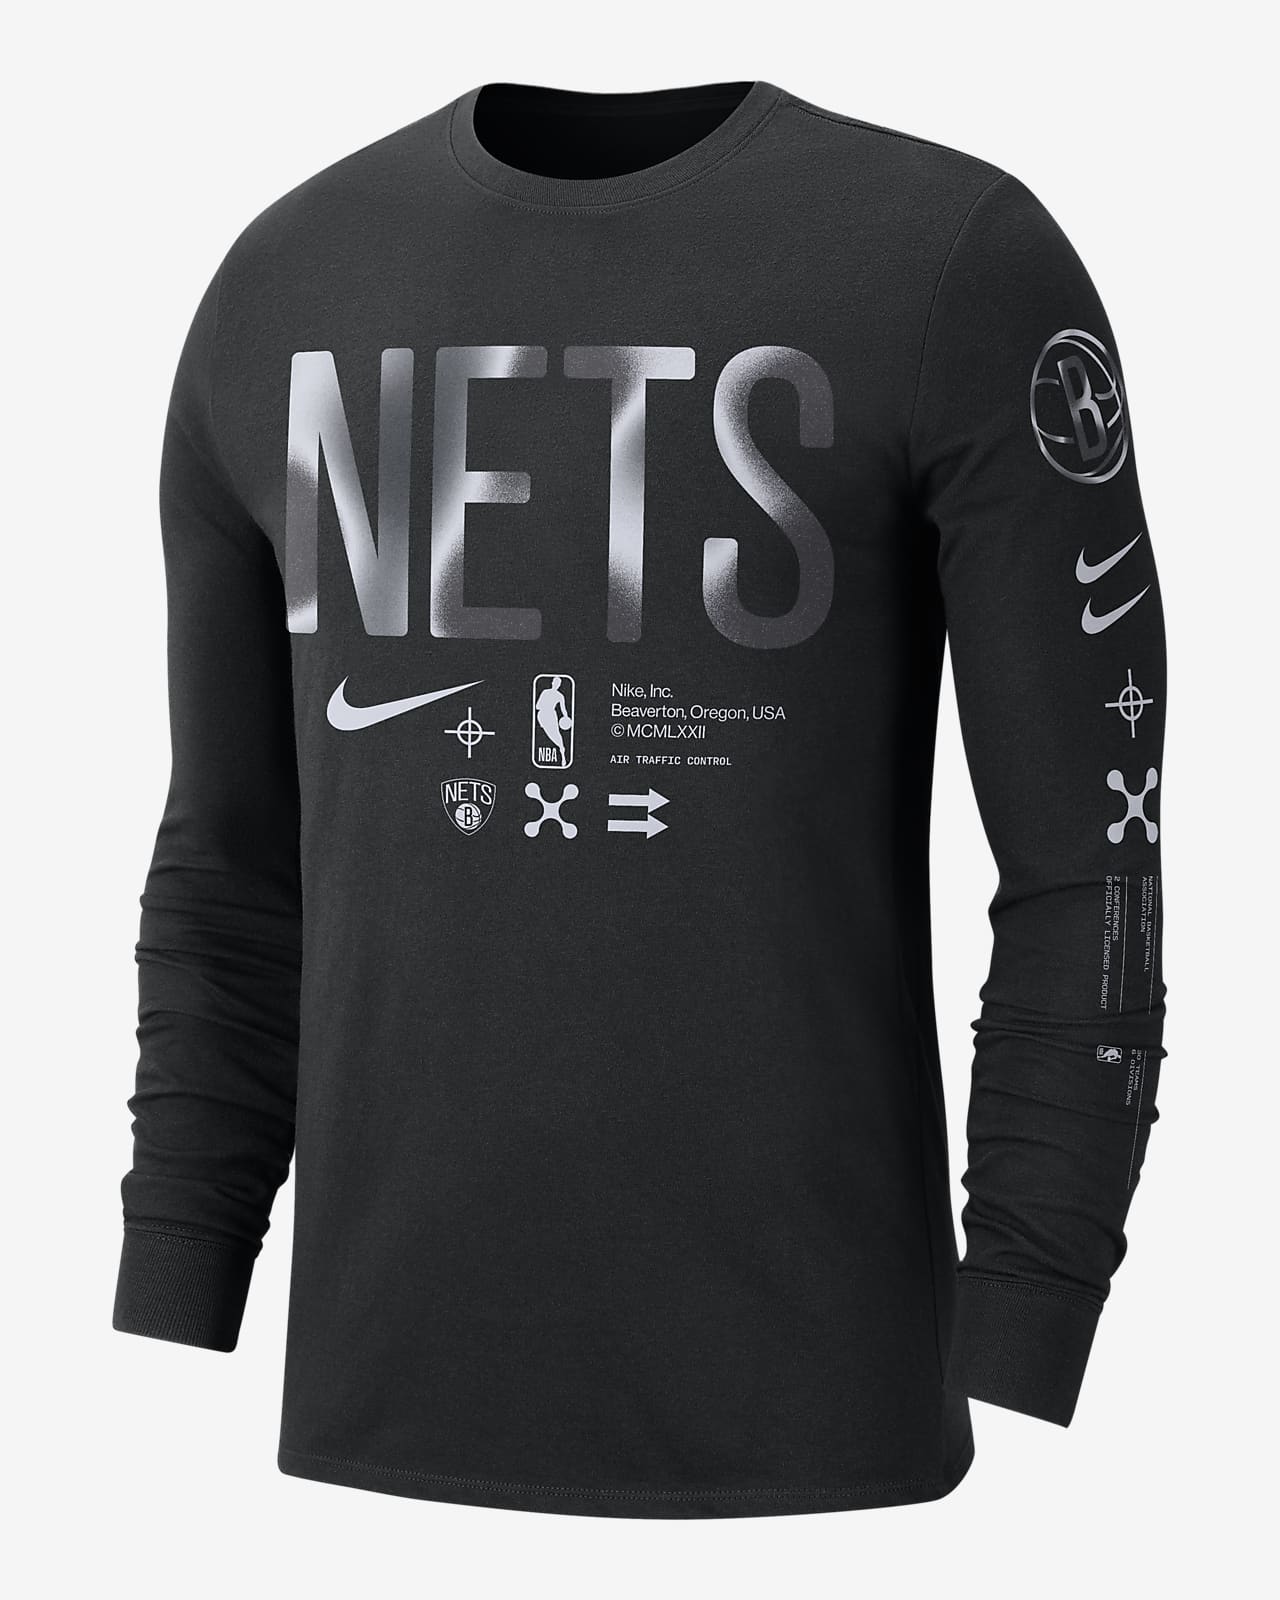 Boys Black Nike Dri-Fit Bed-Stuy Brooklyn Nets T-Shirt / Size S